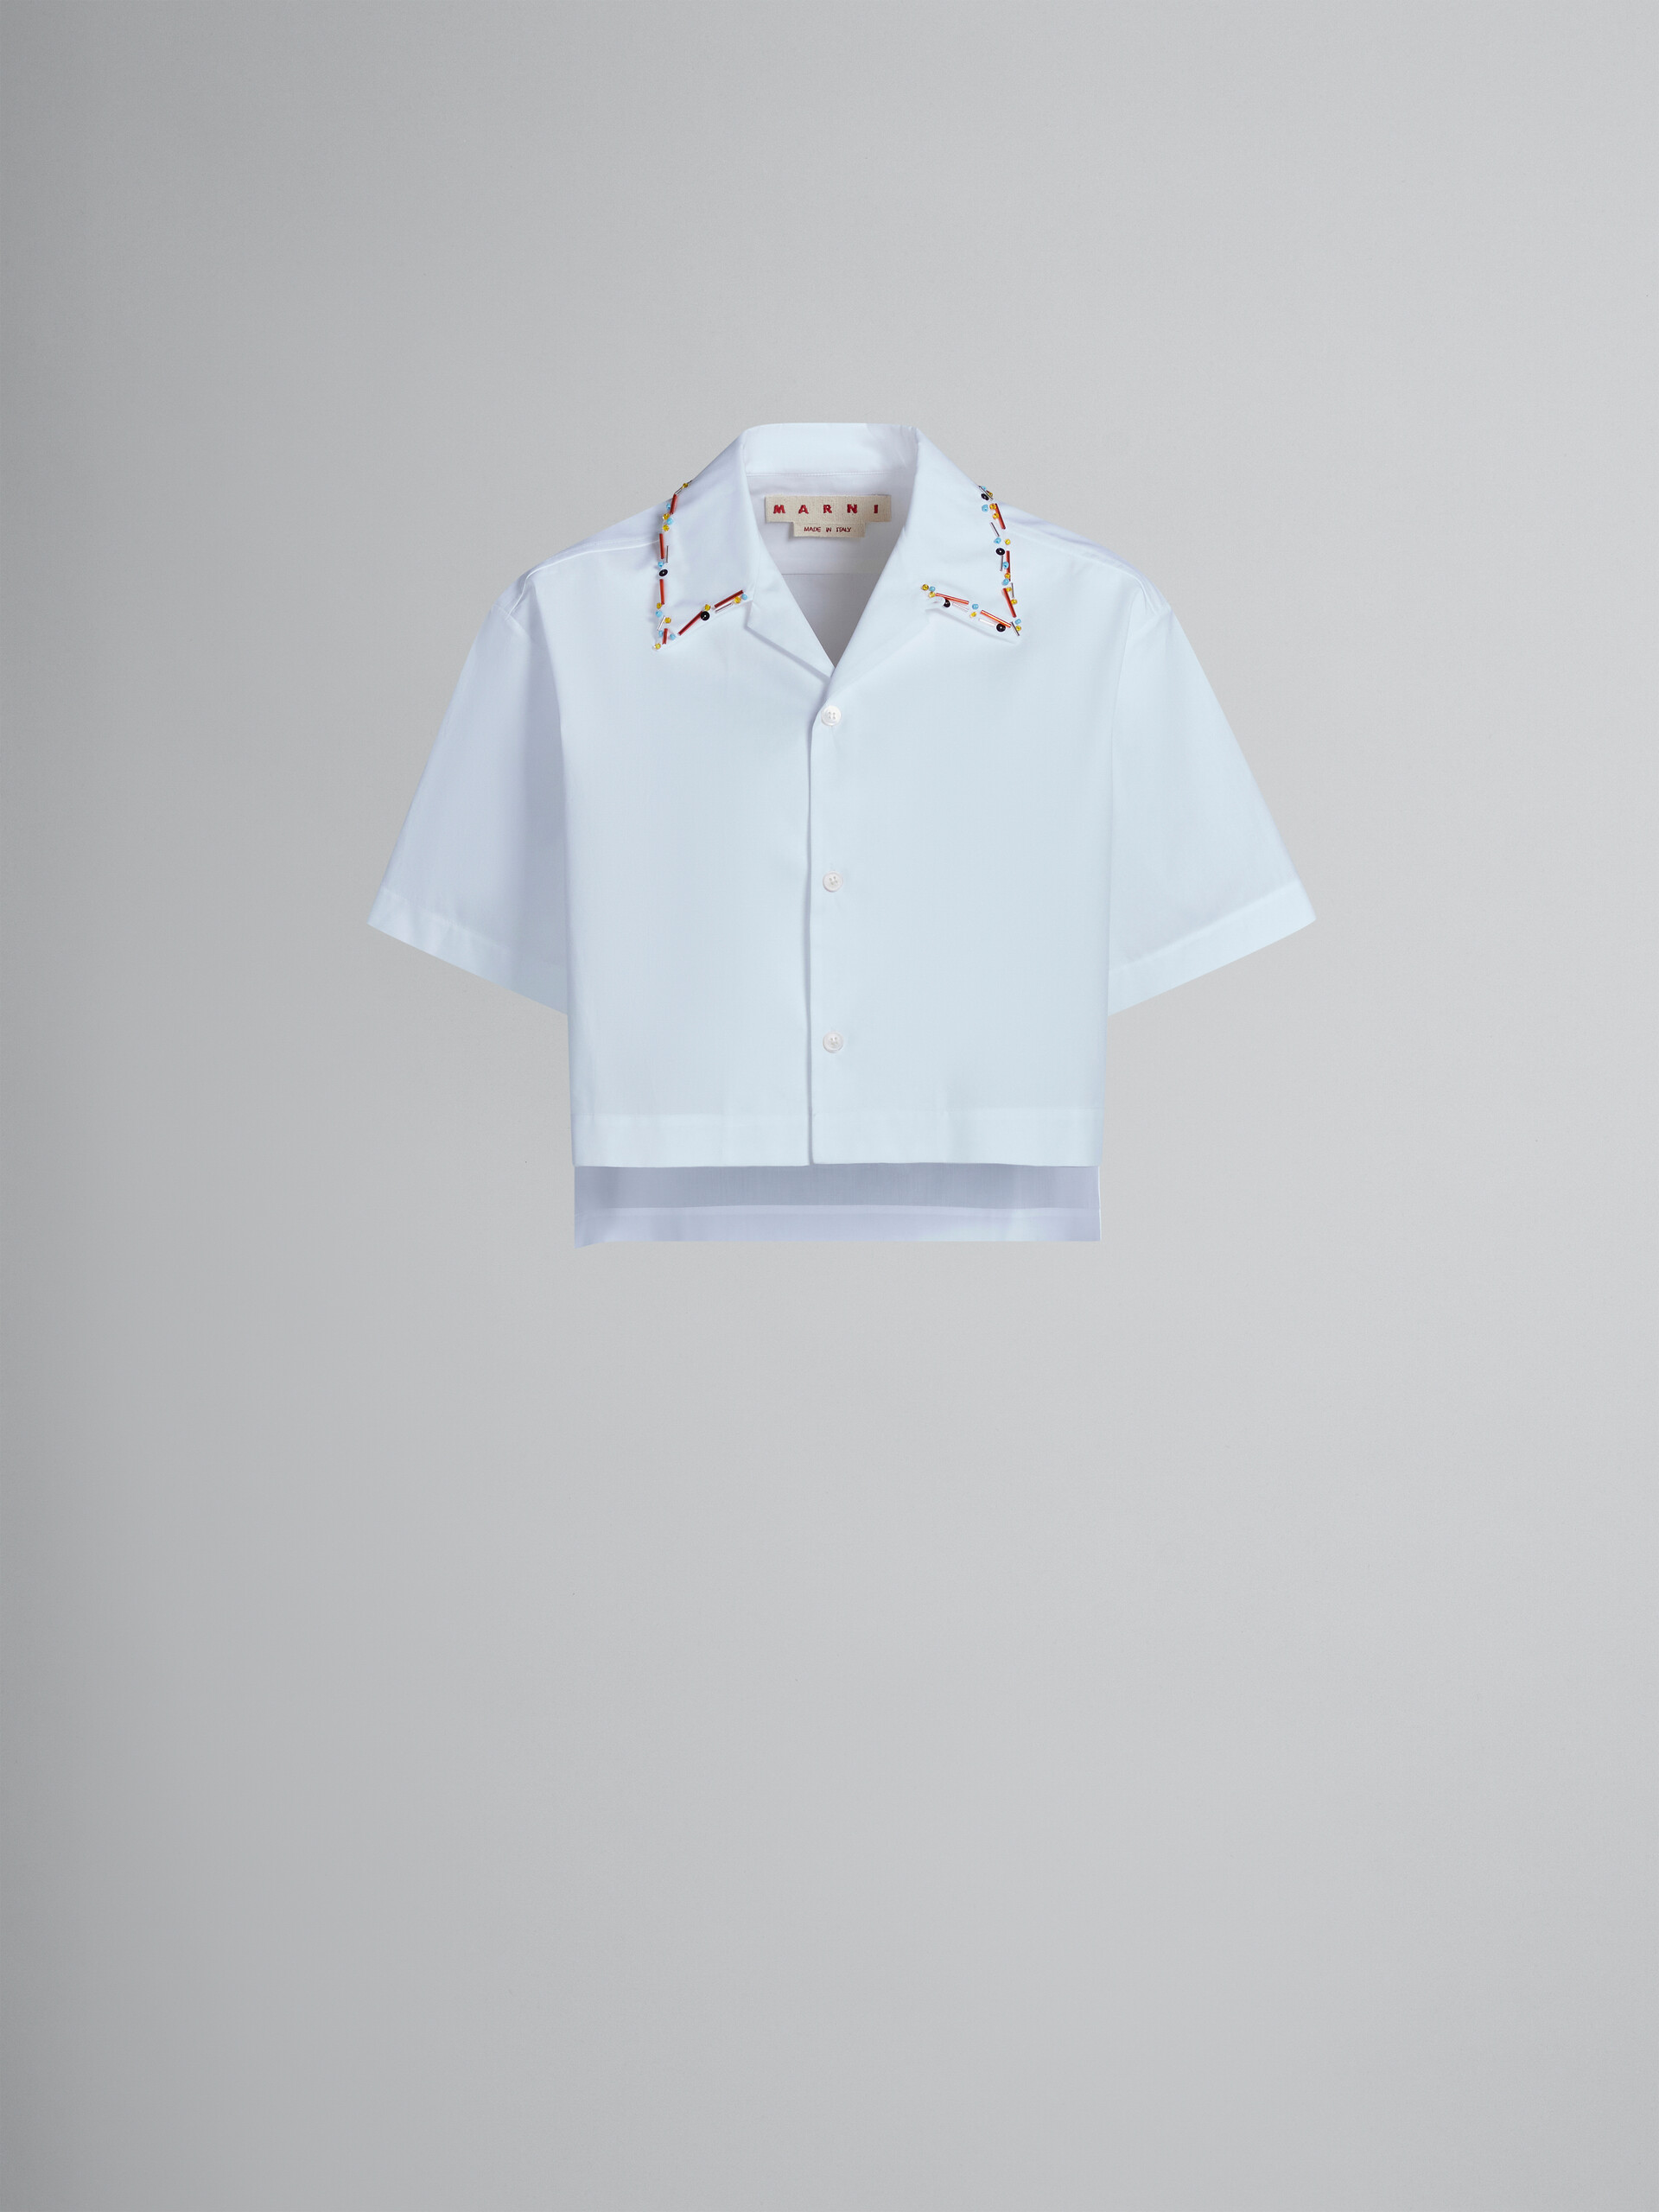 Chemise de bowling courte en coton biologique blanc avec perles - Chemises - Image 1